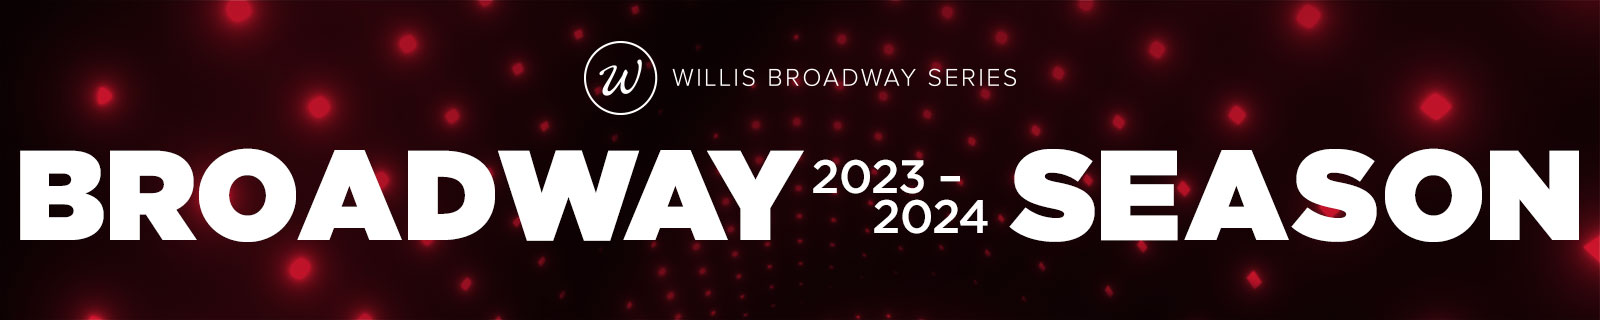 Willis Broadway Series